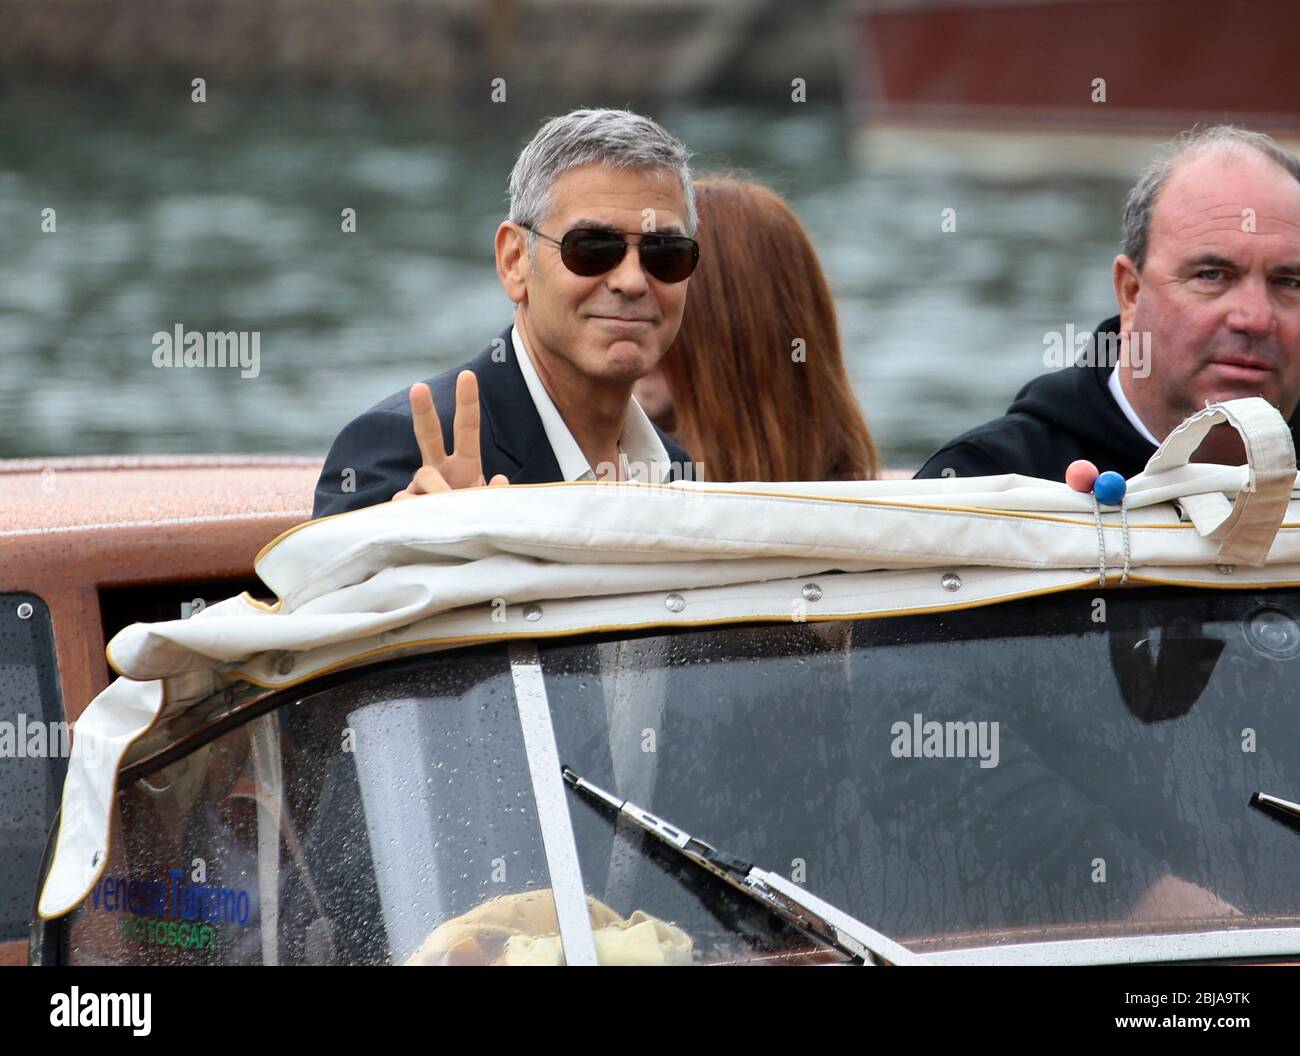 VENEZIA, ITALIA - SETTEMBRE 01: George Clooney sono visti durante il 74. Festival del Cinema di Venezia il 1° settembre 2017 a Venezia Foto Stock